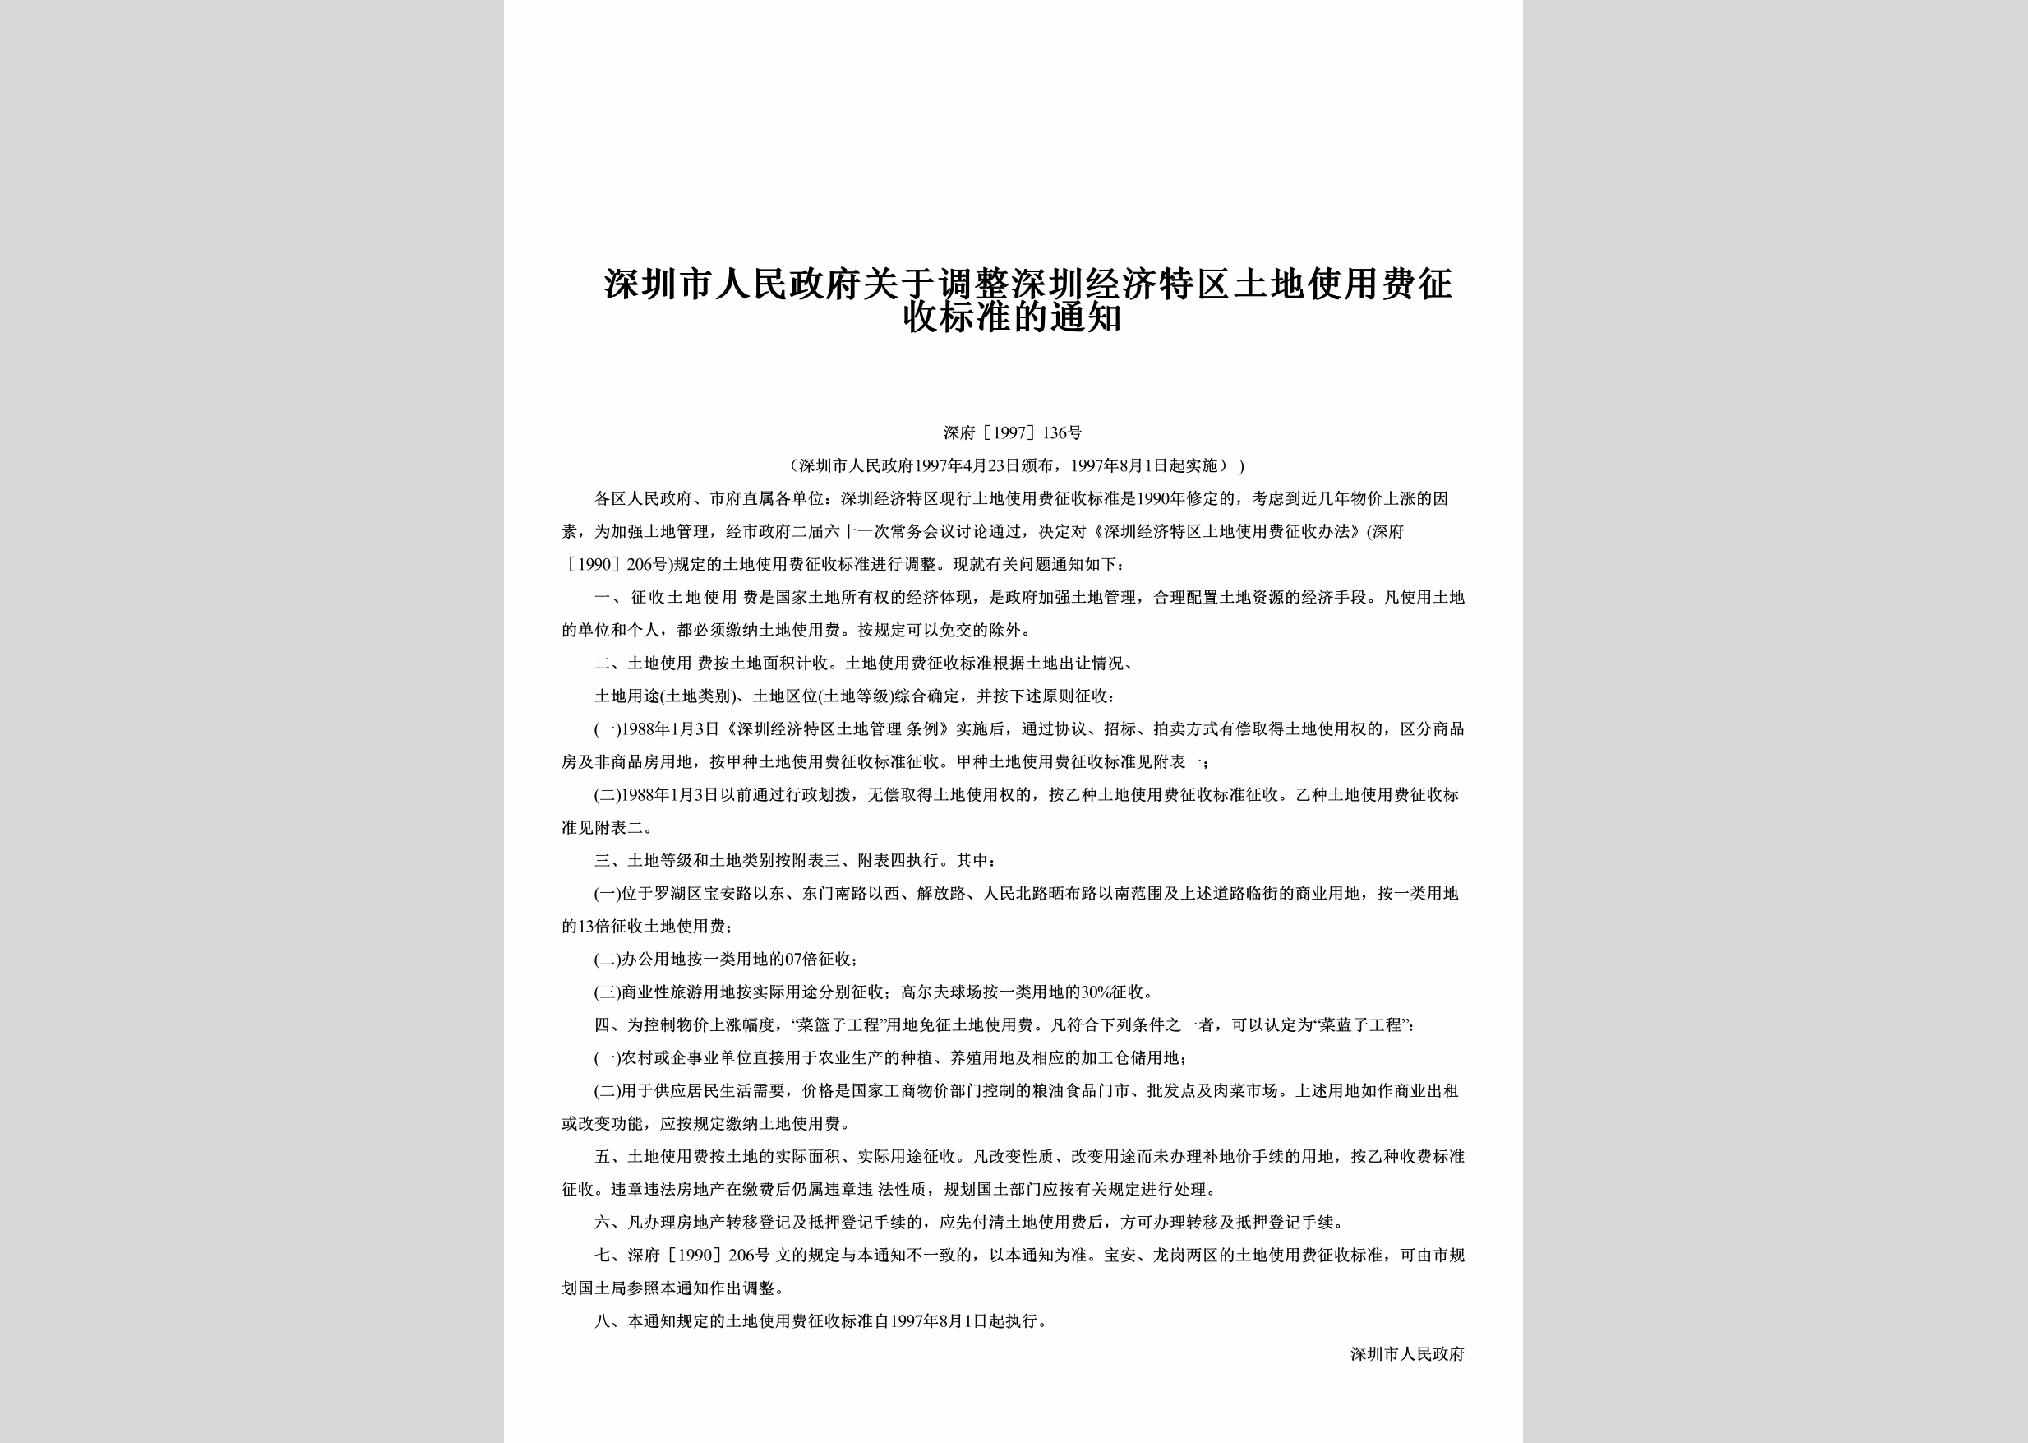 深府[1997]136号：关于调整深圳经济特区土地使用费征收标准的通知